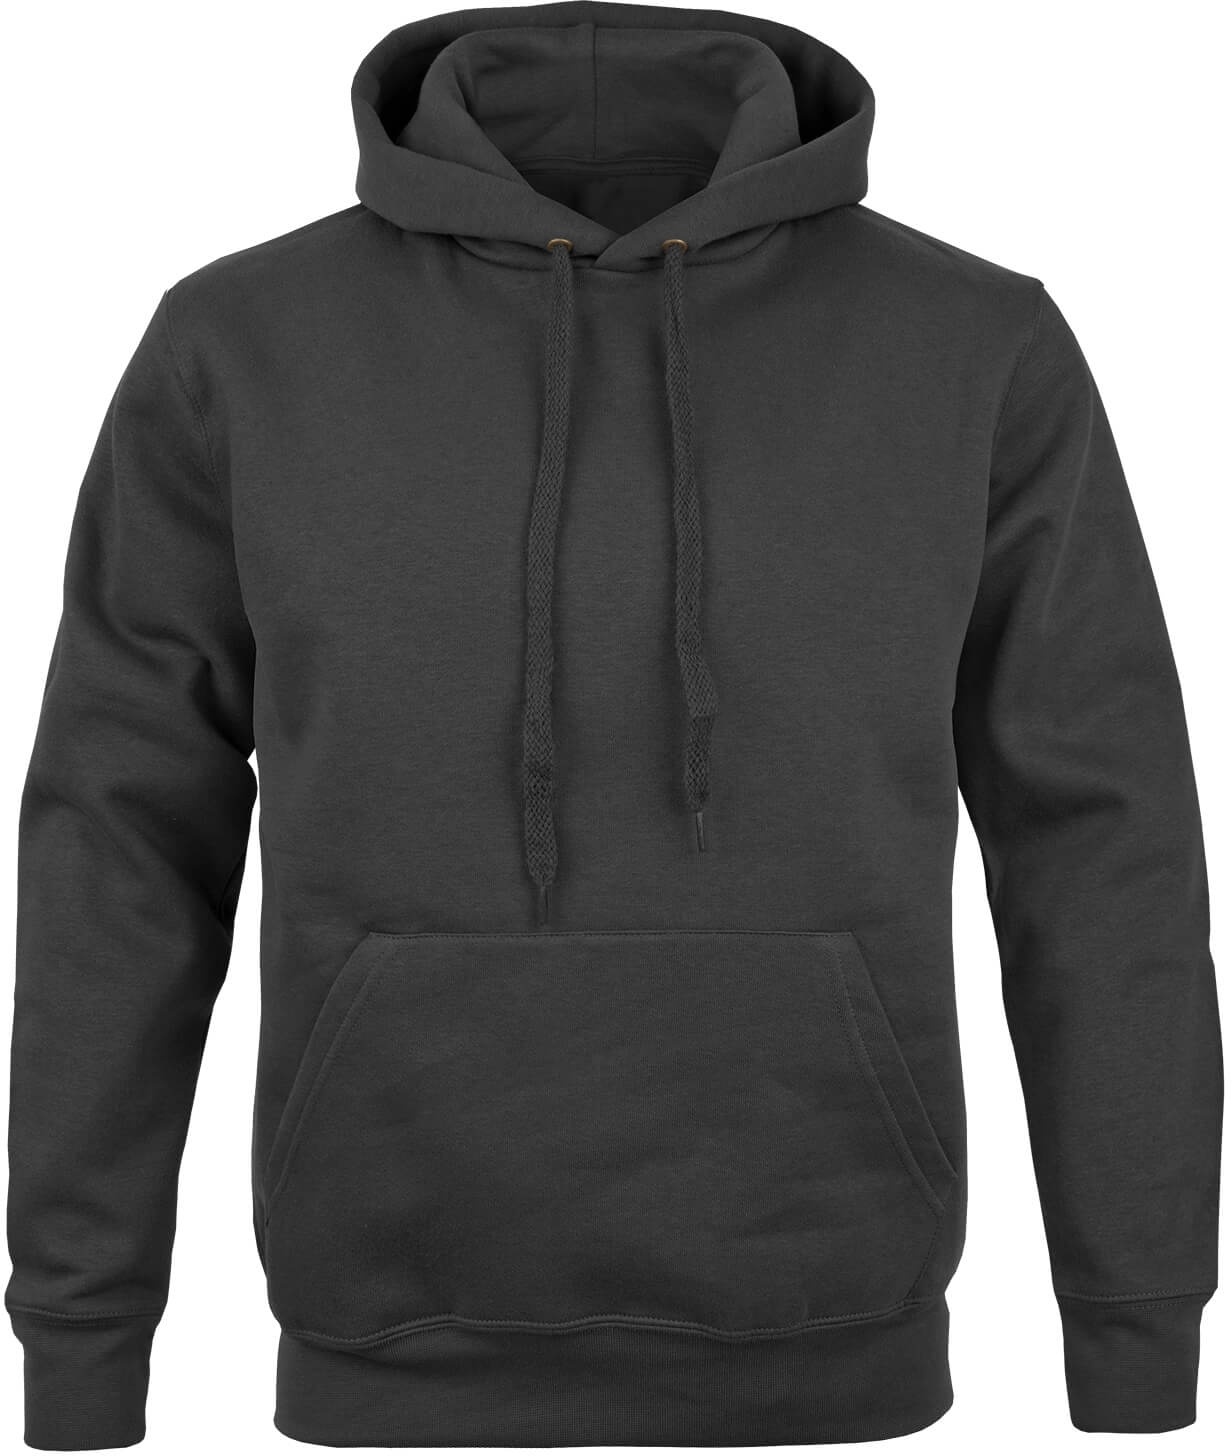 Premium Kapuzen Pullover schwarz, Größe S